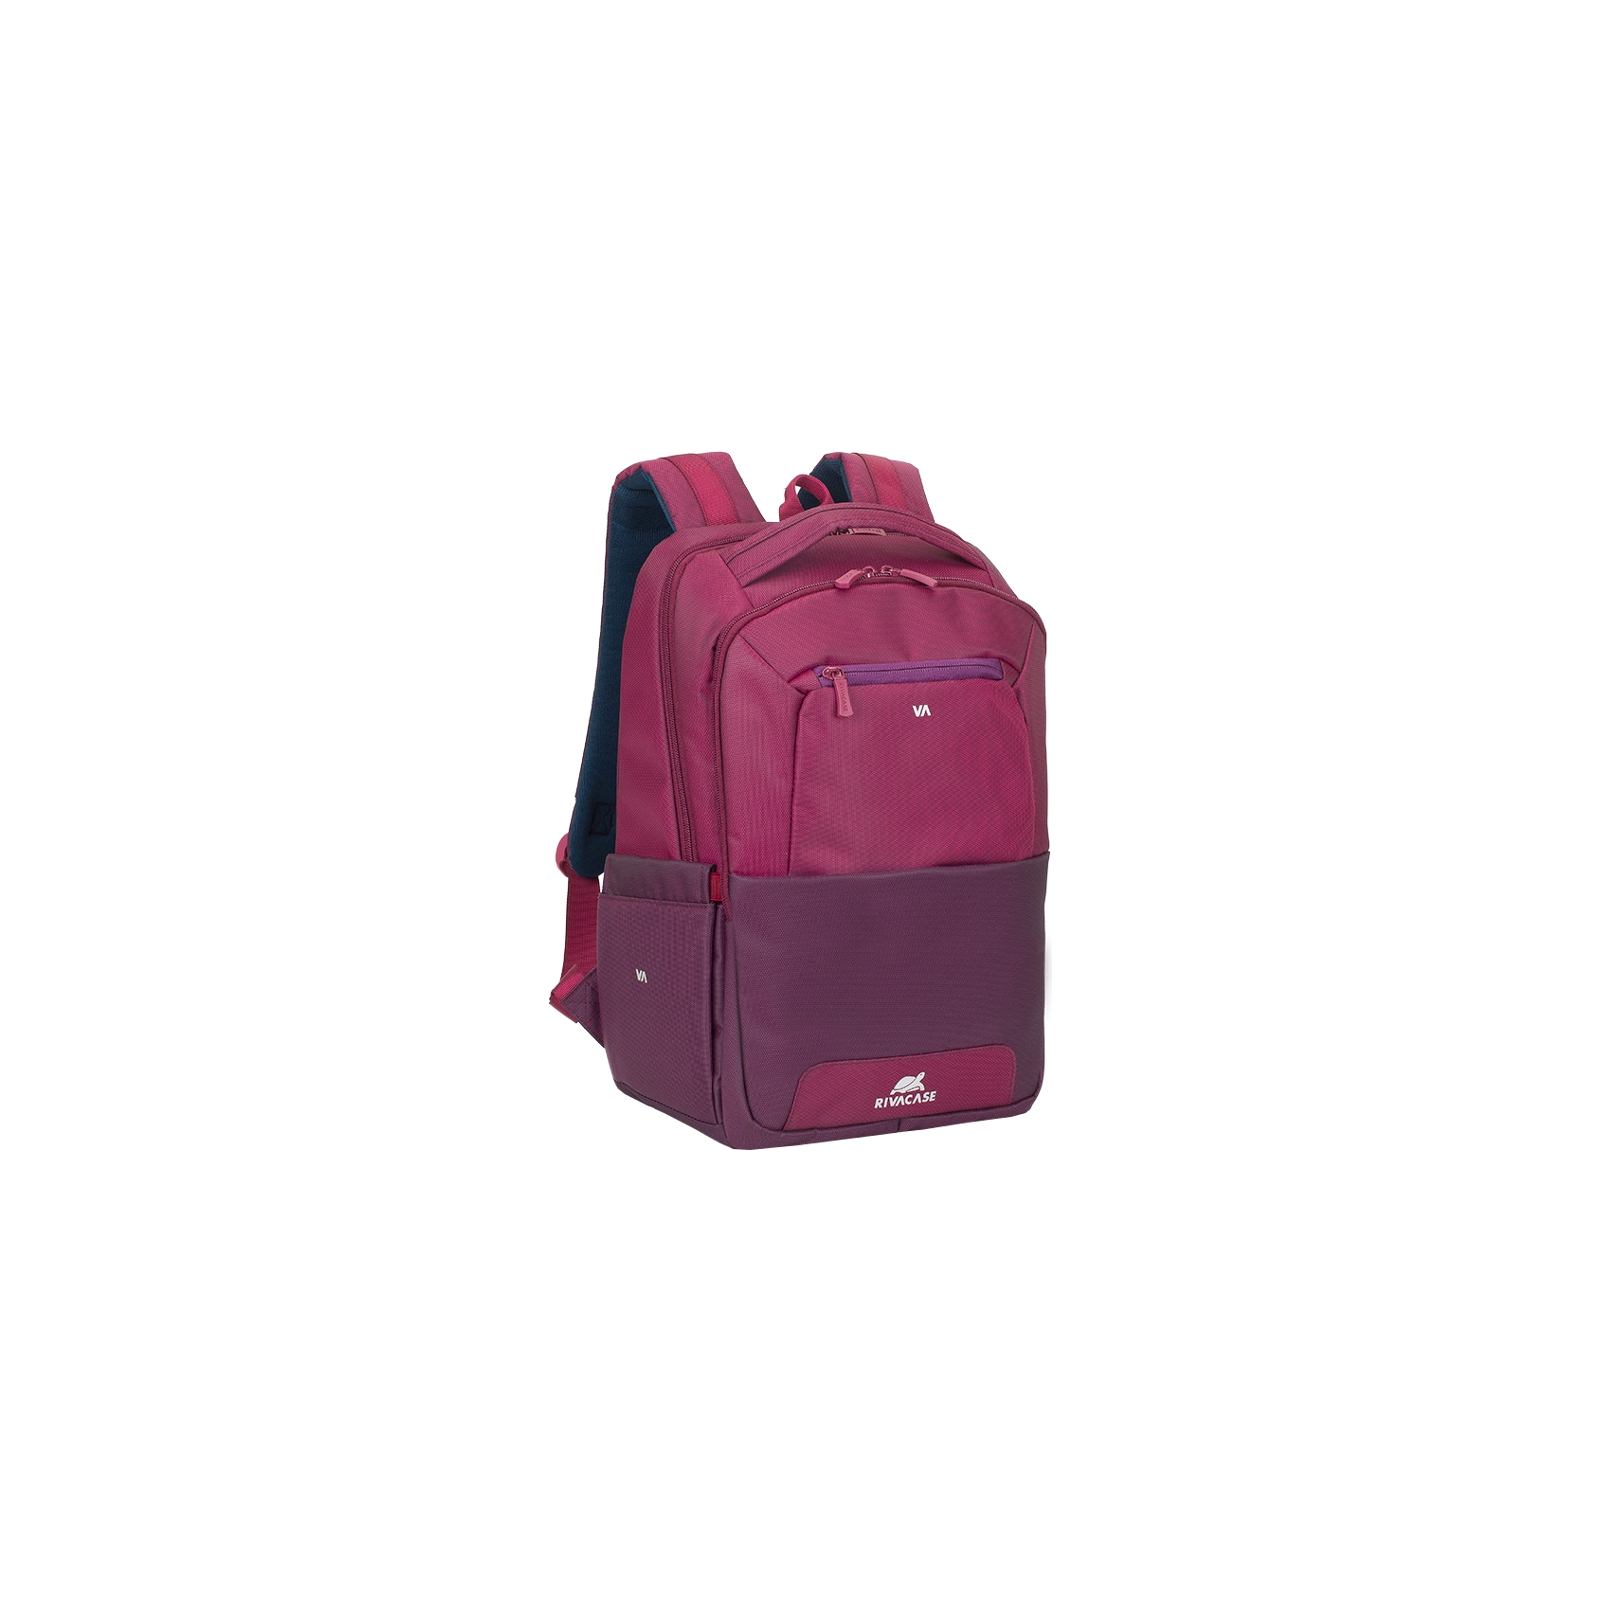 Рюкзак для ноутбука RivaCase 15.6" 7767 Claret violet/purple (7767Claret violet/purple)